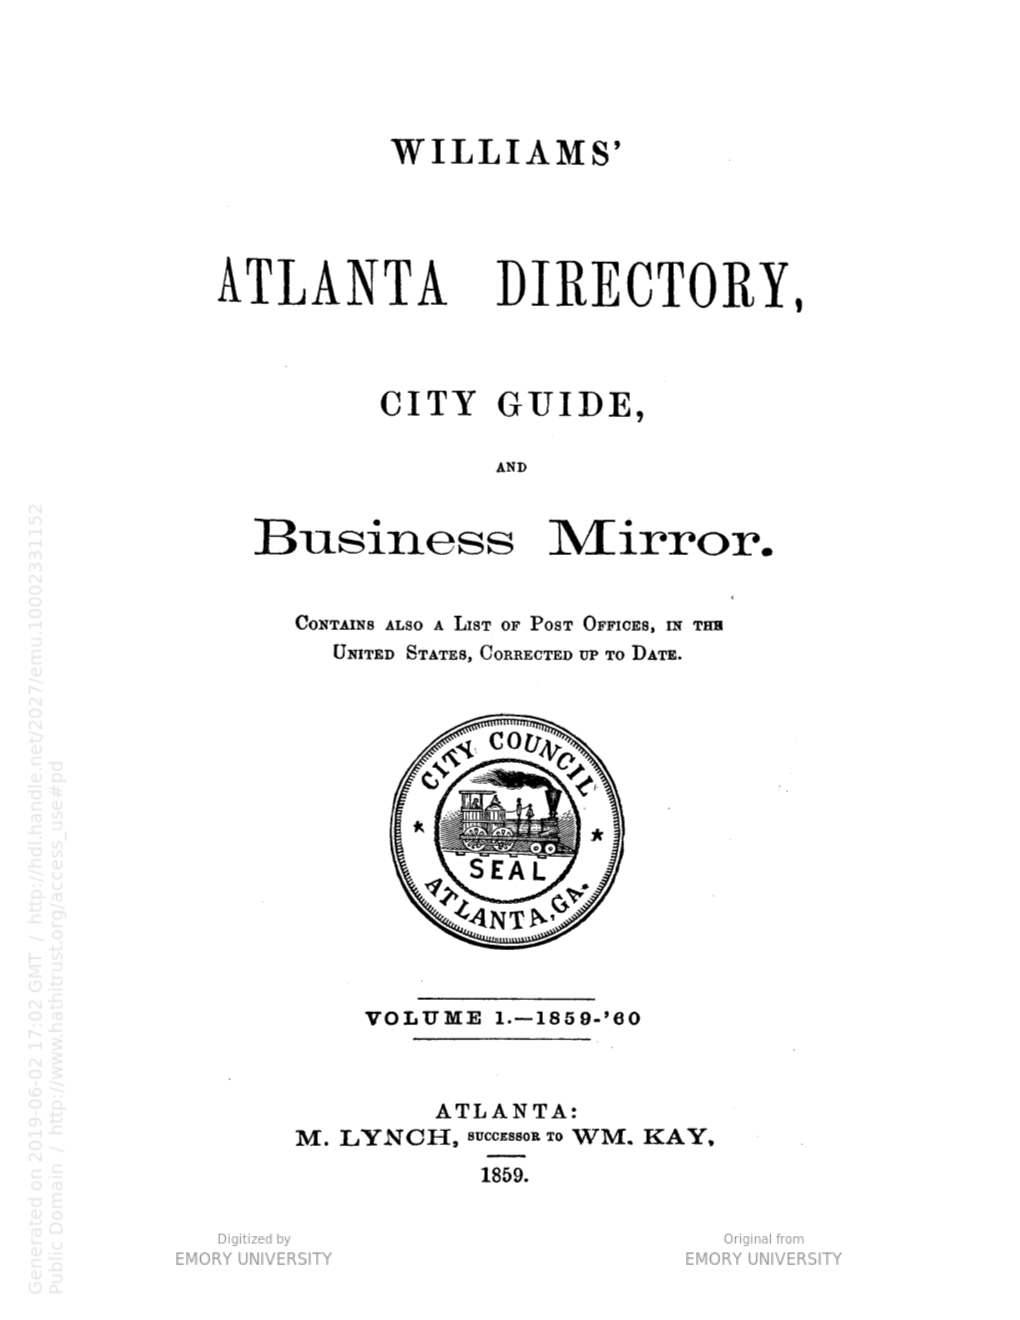 Atlanta City Directory, 1859-60